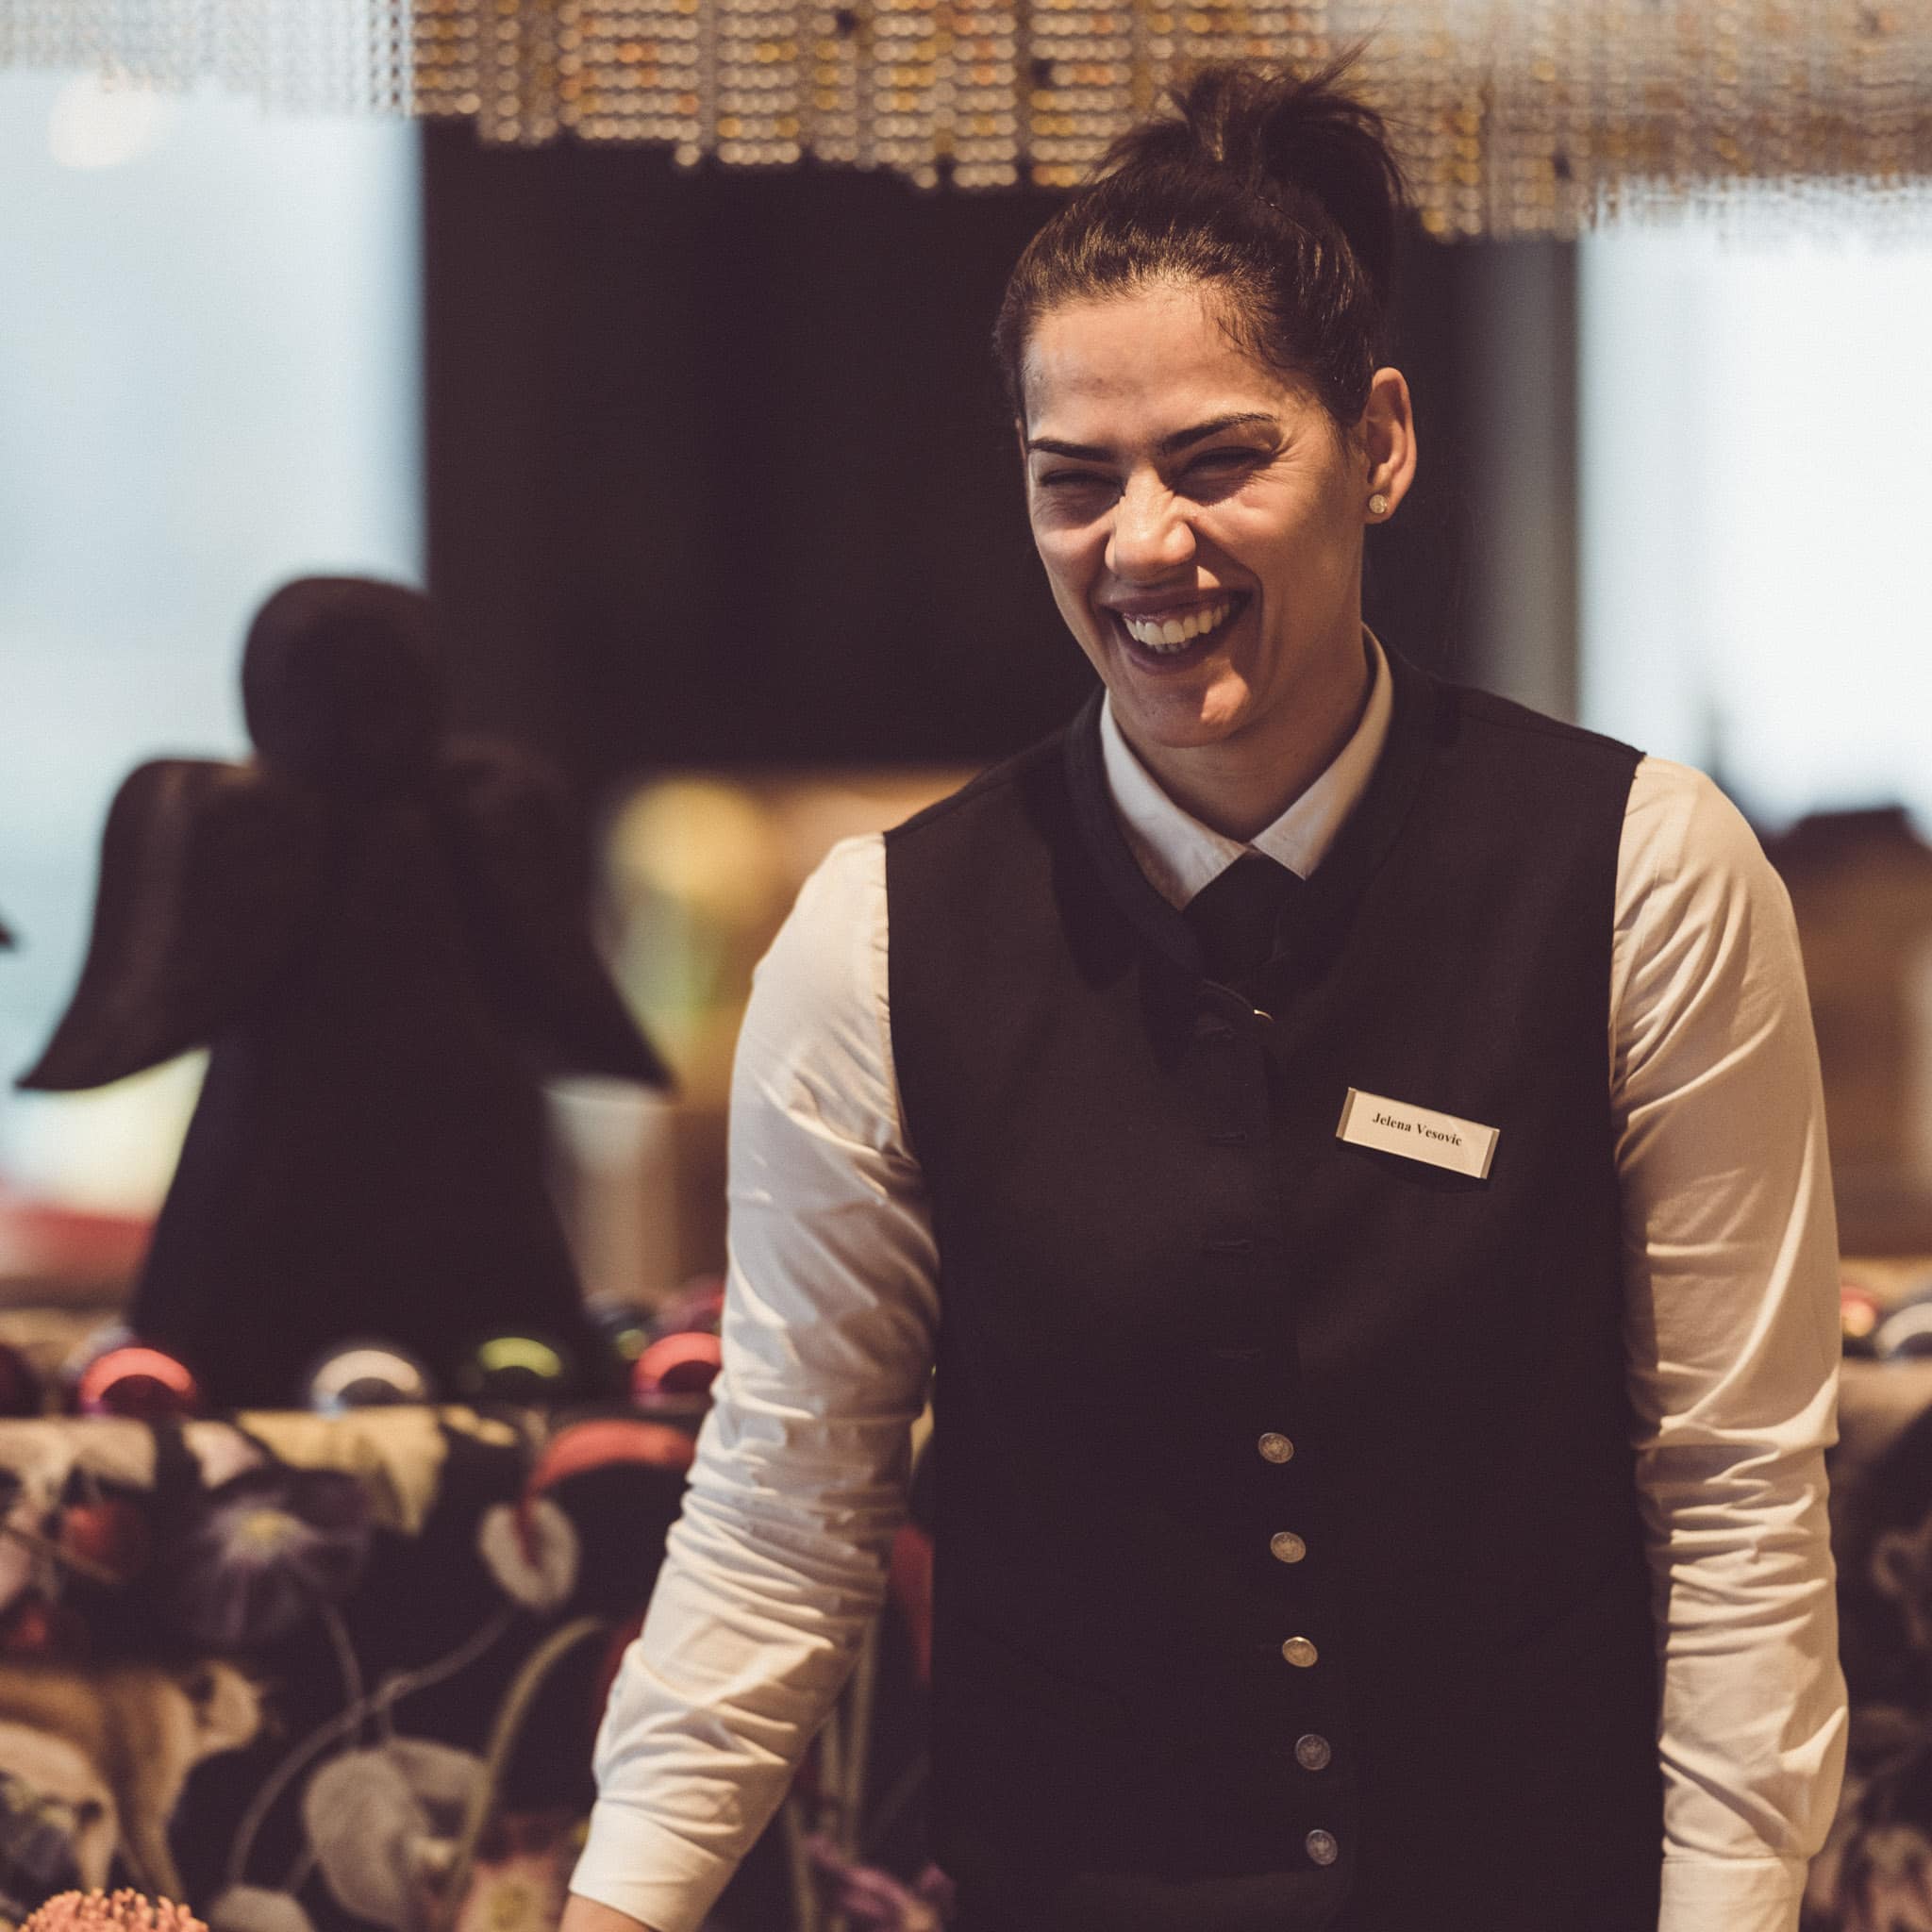 Frau im Service lacht bei der Arbeit im Eibsee Hotel